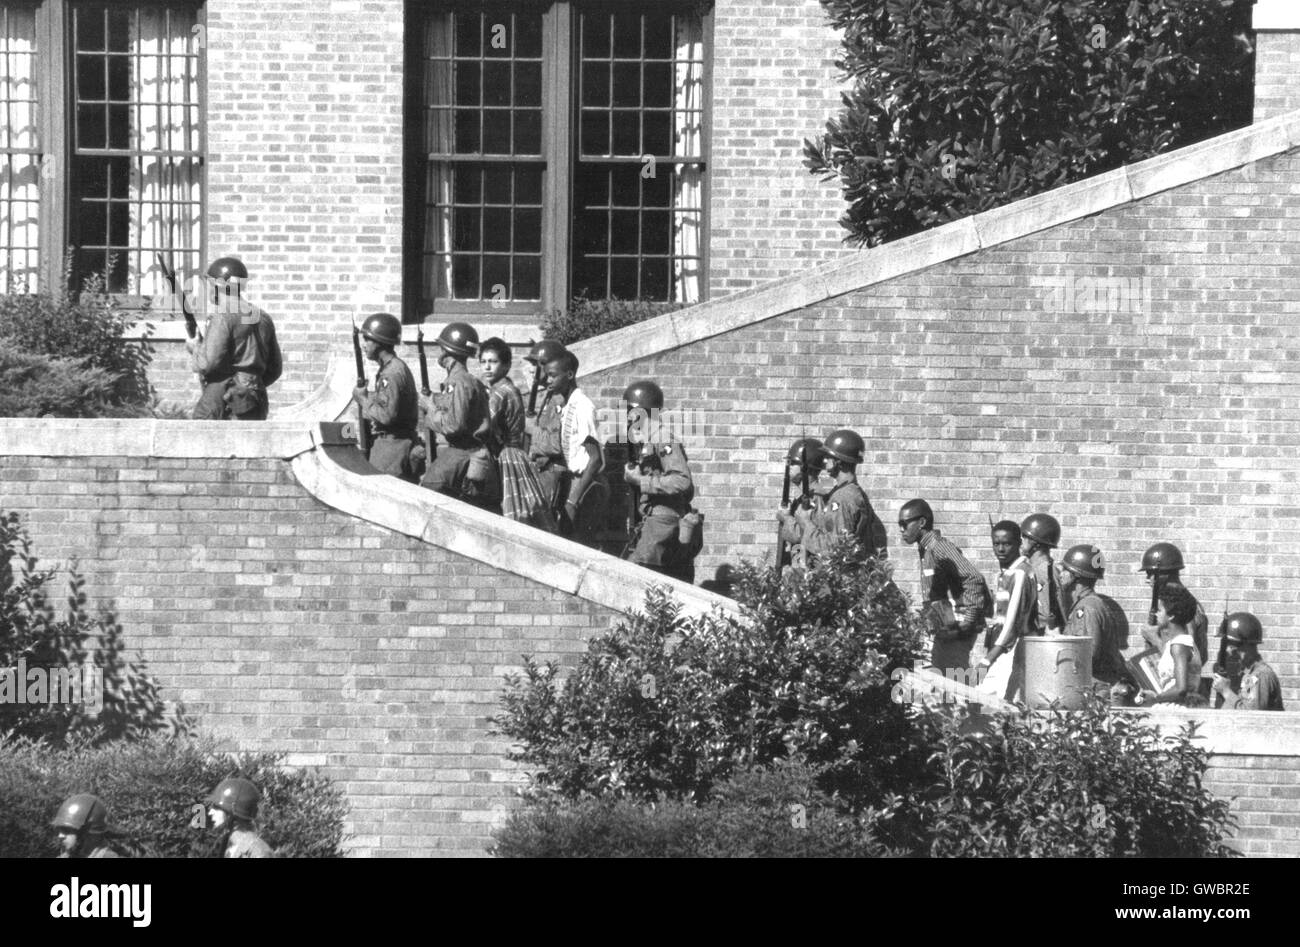 LITTLE ROCK HIGH SCHOOL, Arkansas. Truppen von der 327th in der Luft Kampfgruppe, 101st Airborne Division, Begleitung der Little Rock Nine um die Schule am 23. September 1957 treten. Foto U.S. Army Stockfoto